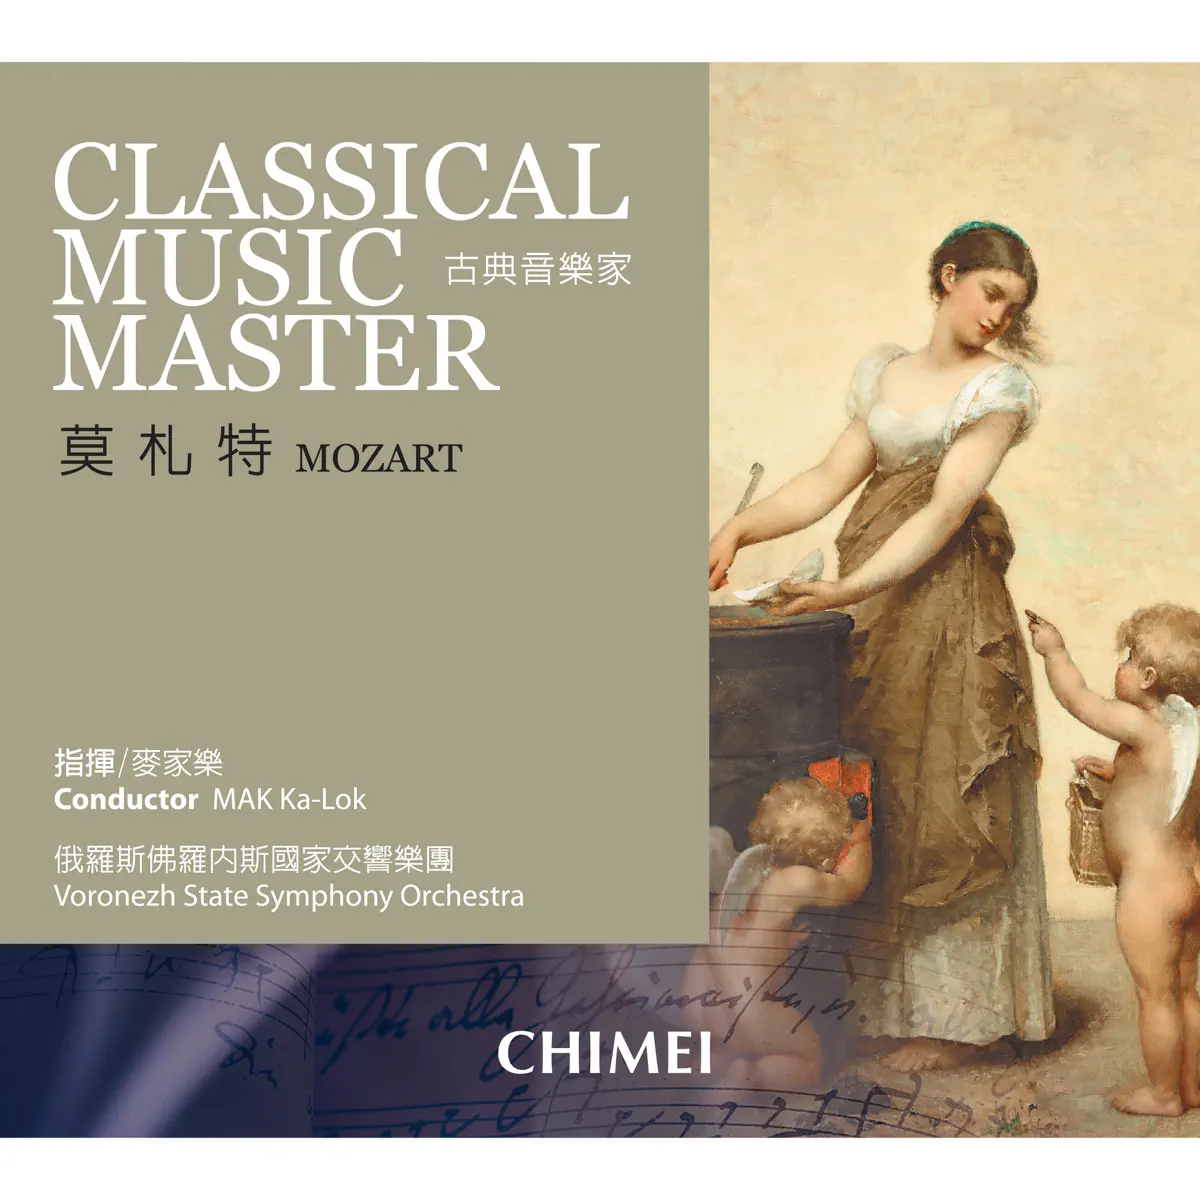 麦家乐 & 俄罗斯佛罗内斯国家交响乐团 - 古典音乐家: 莫札特 Classical Music Master: Mozart (2007) [iTunes Plus AAC M4A]-新房子